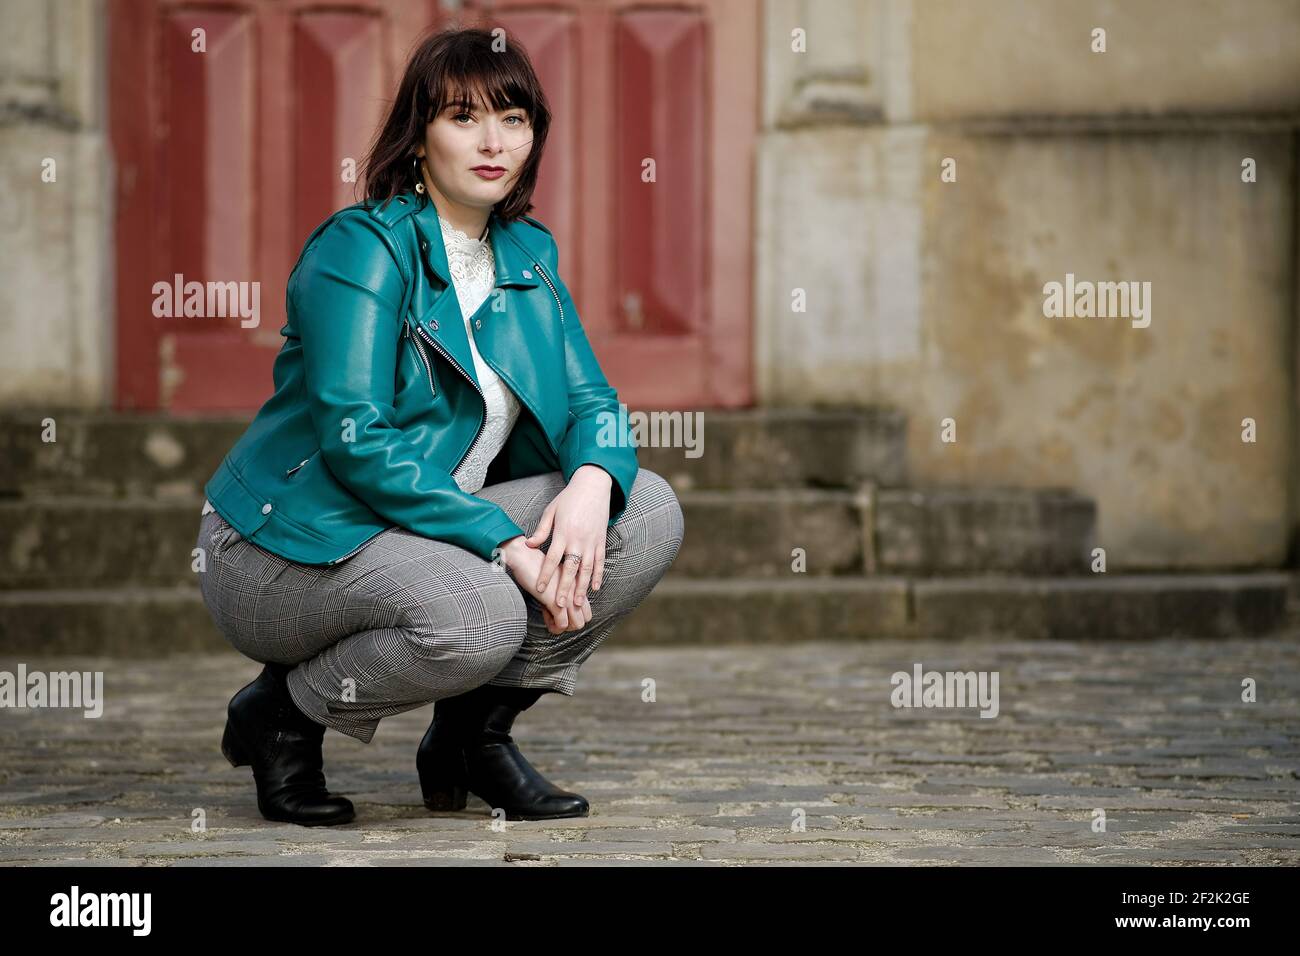 Belle jeune parisienne avec des yeux verts et un vert Veste devant une porte rouge à Paris Banque D'Images